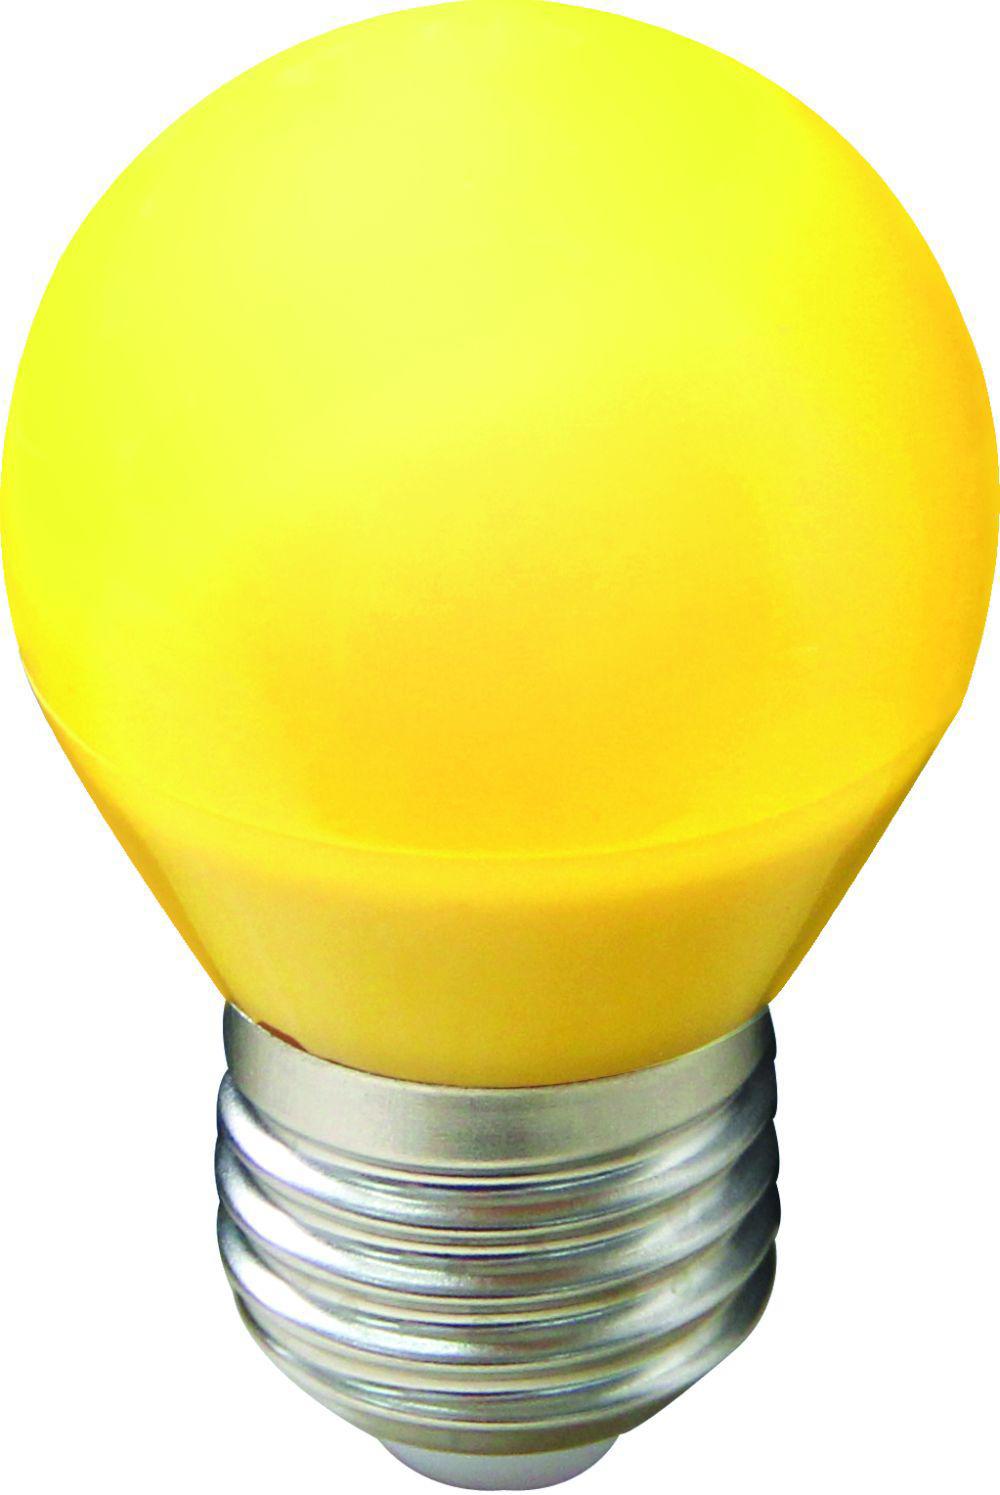 90121222 Лампа светодиодная K7CY50ELB стандарт E27 220 В 5 Вт шар малый золотистая желтый свет STLM-0112396 ECOLA